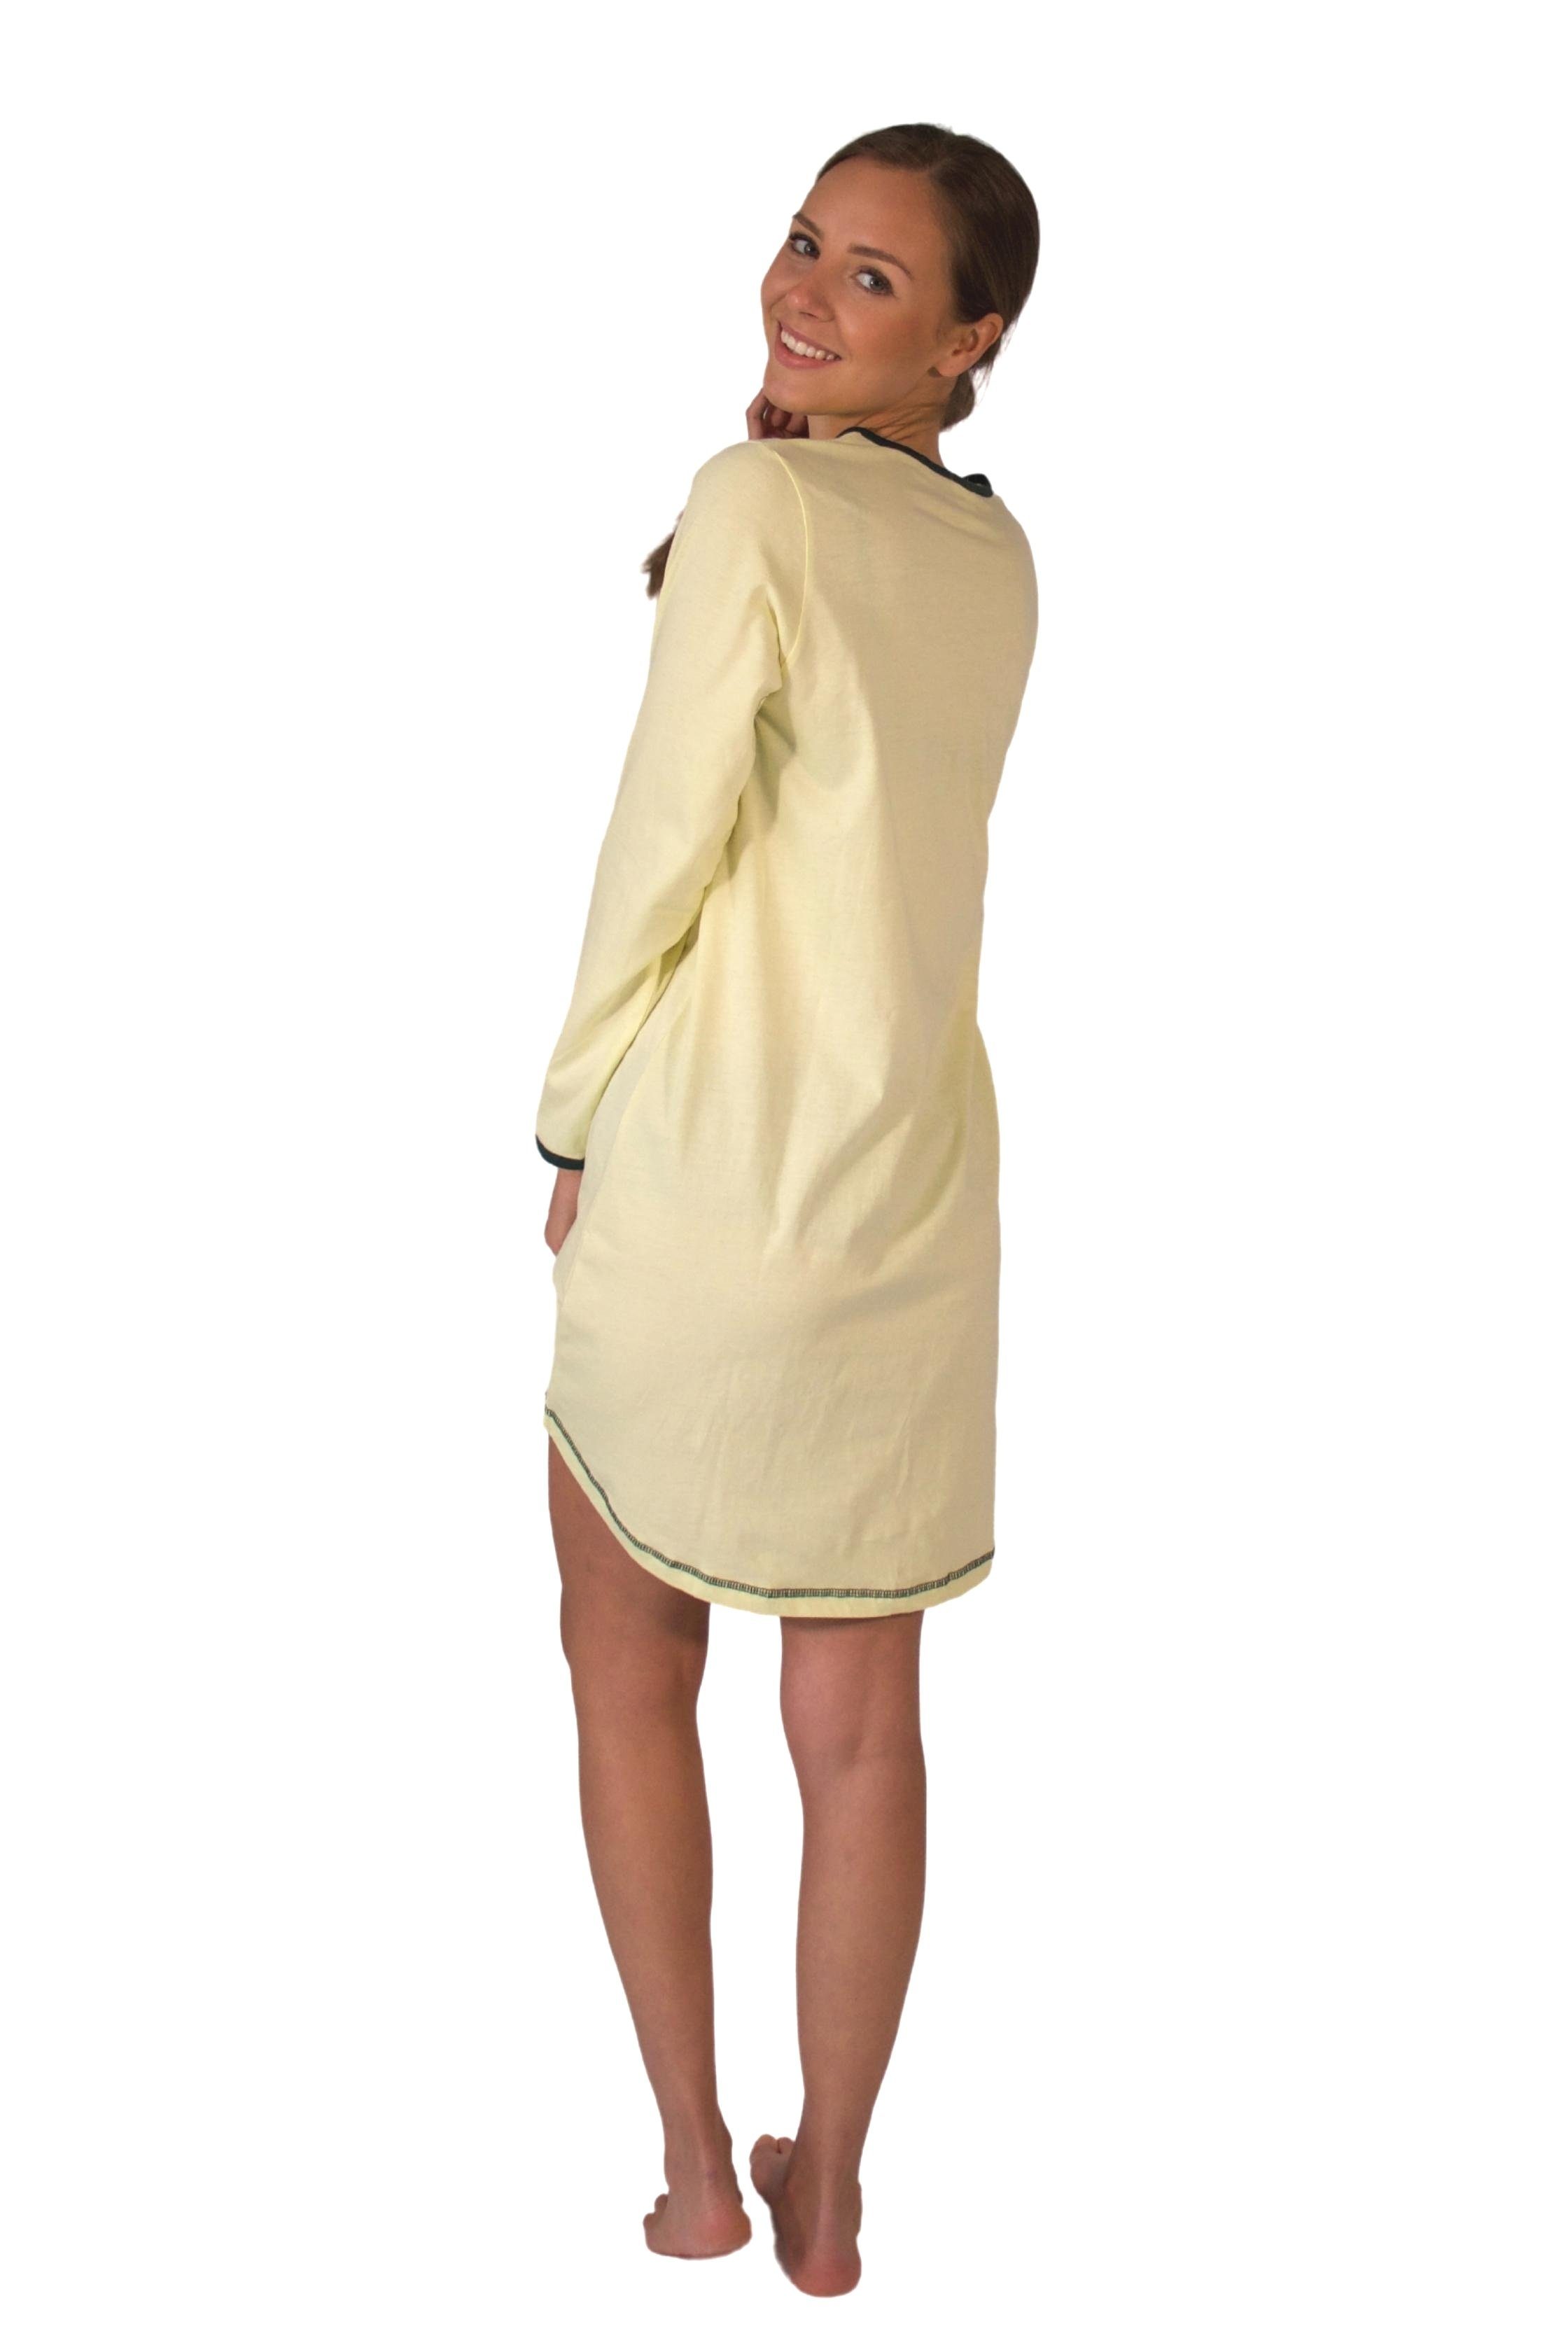 Consult-Tex Nachthemd Damen BaumwolleJersey Nachthemd tragen DW720 zu mingrün bequem